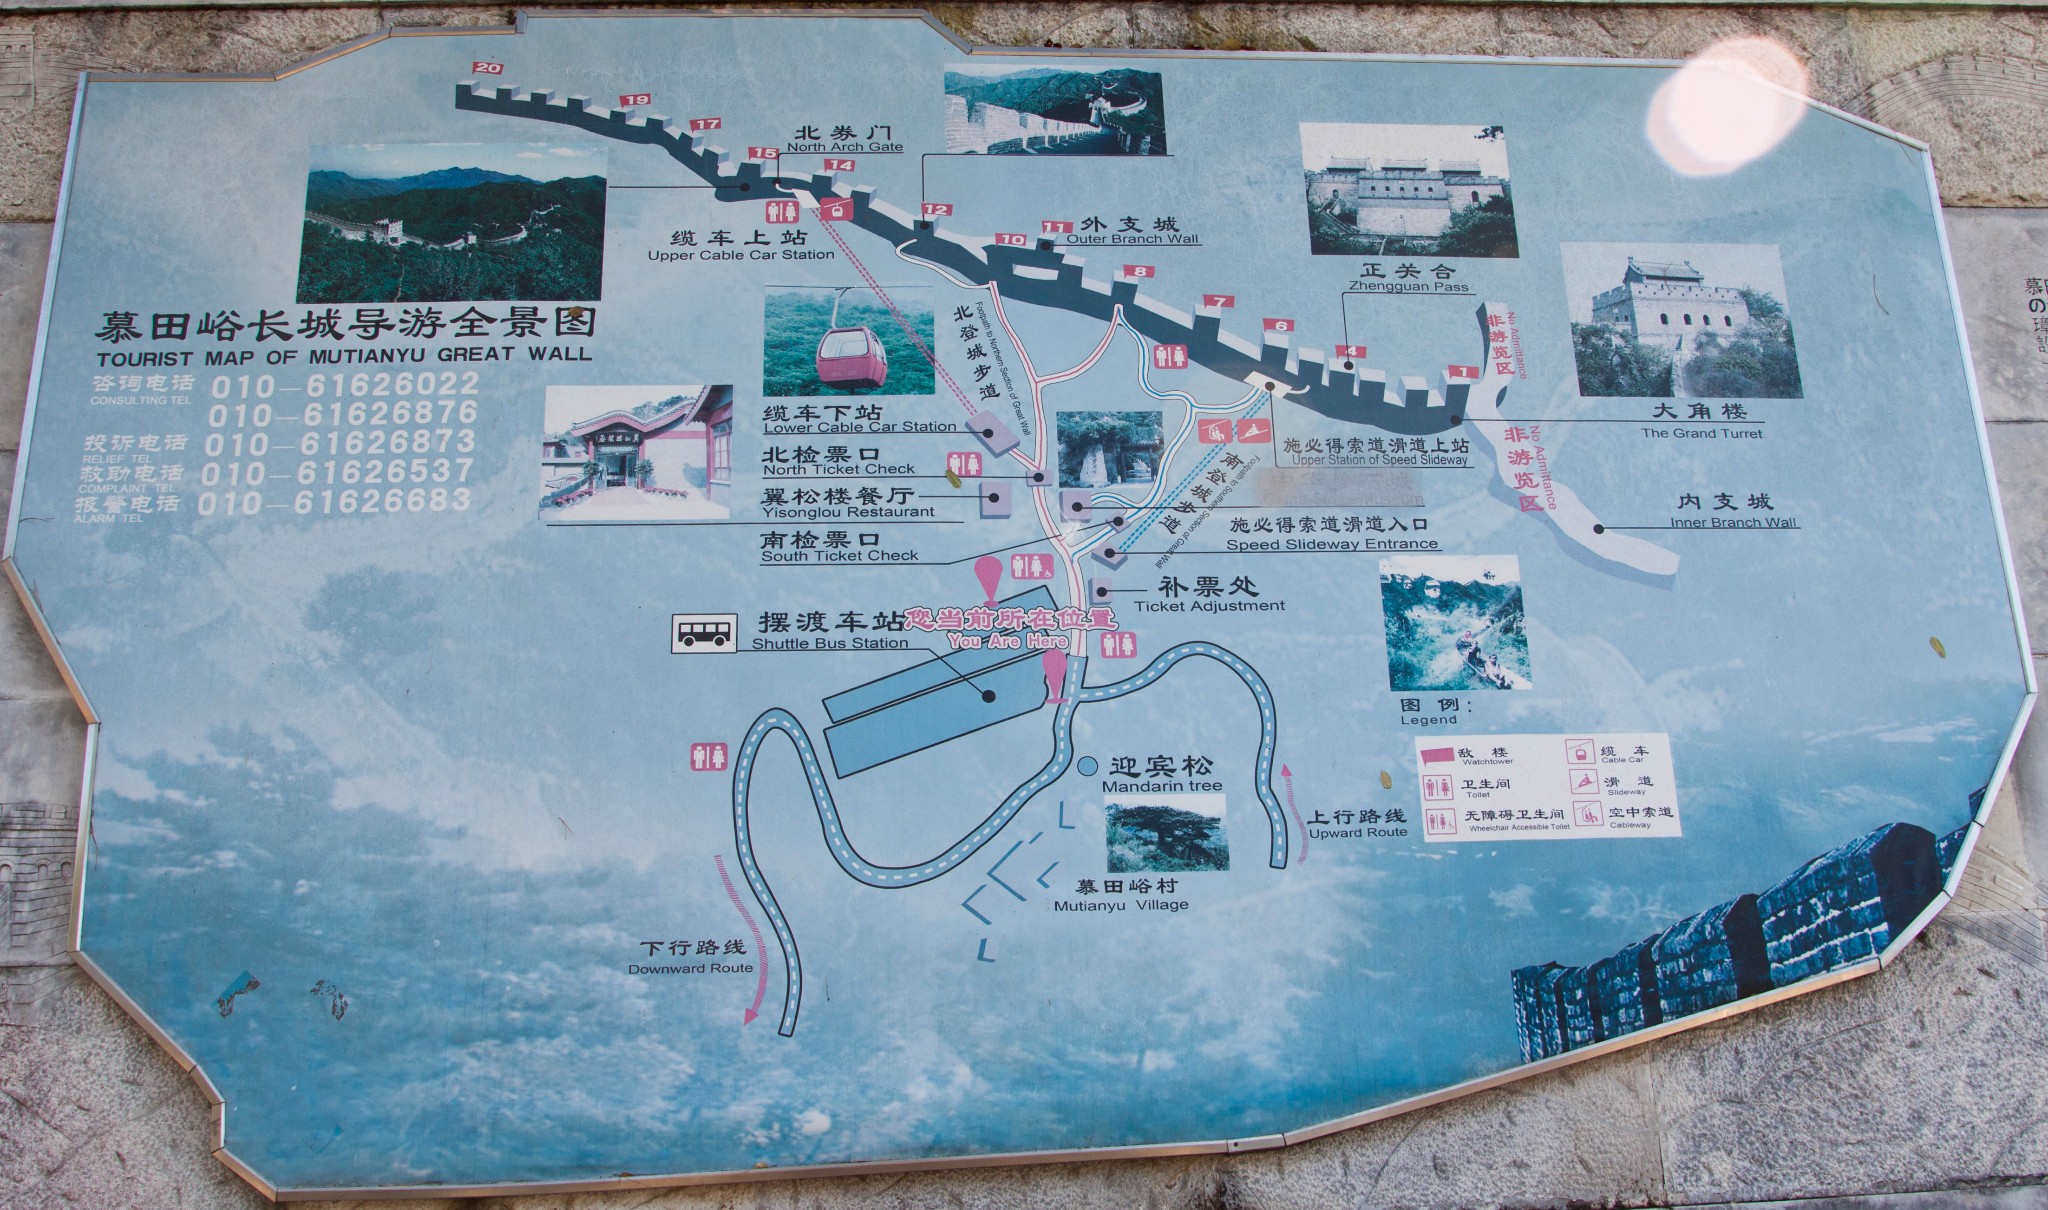 BeiJing mutianyu great wall Tourist Map